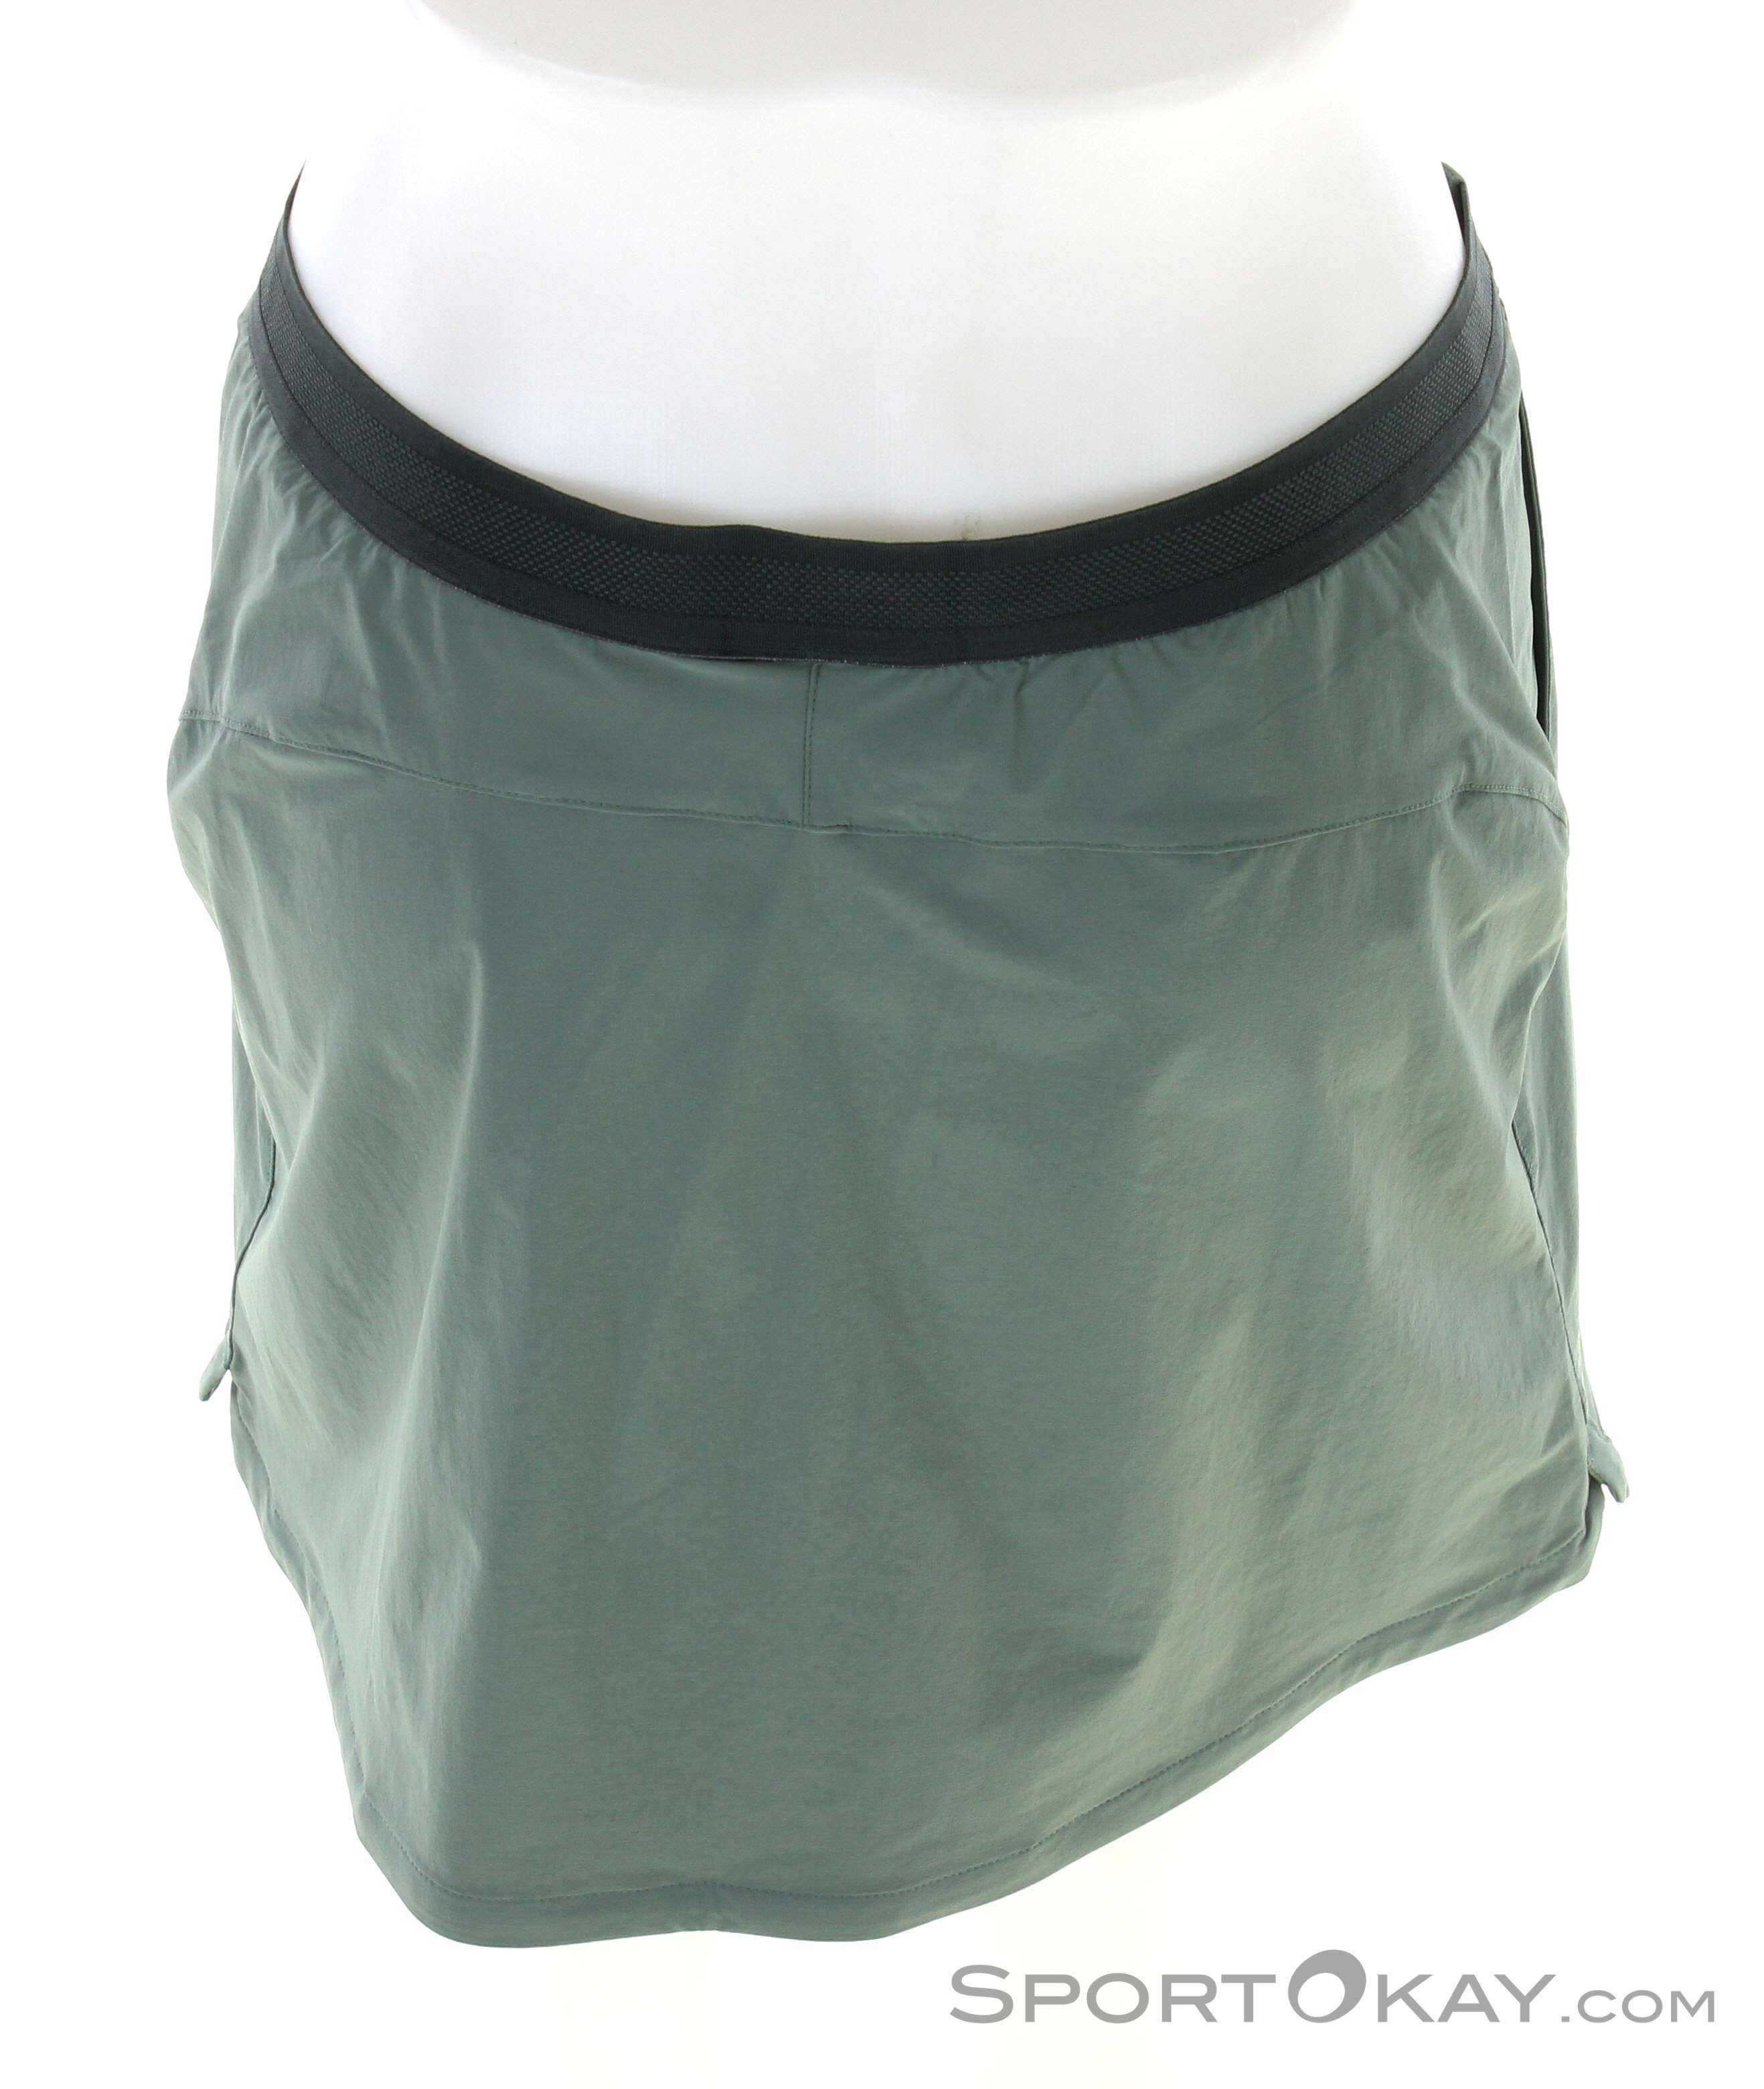 Jack Wolfskin Hilltop - - Outdoor Skirt Pants All - - Trail Outdoor Clothing Women Skort Outdoor